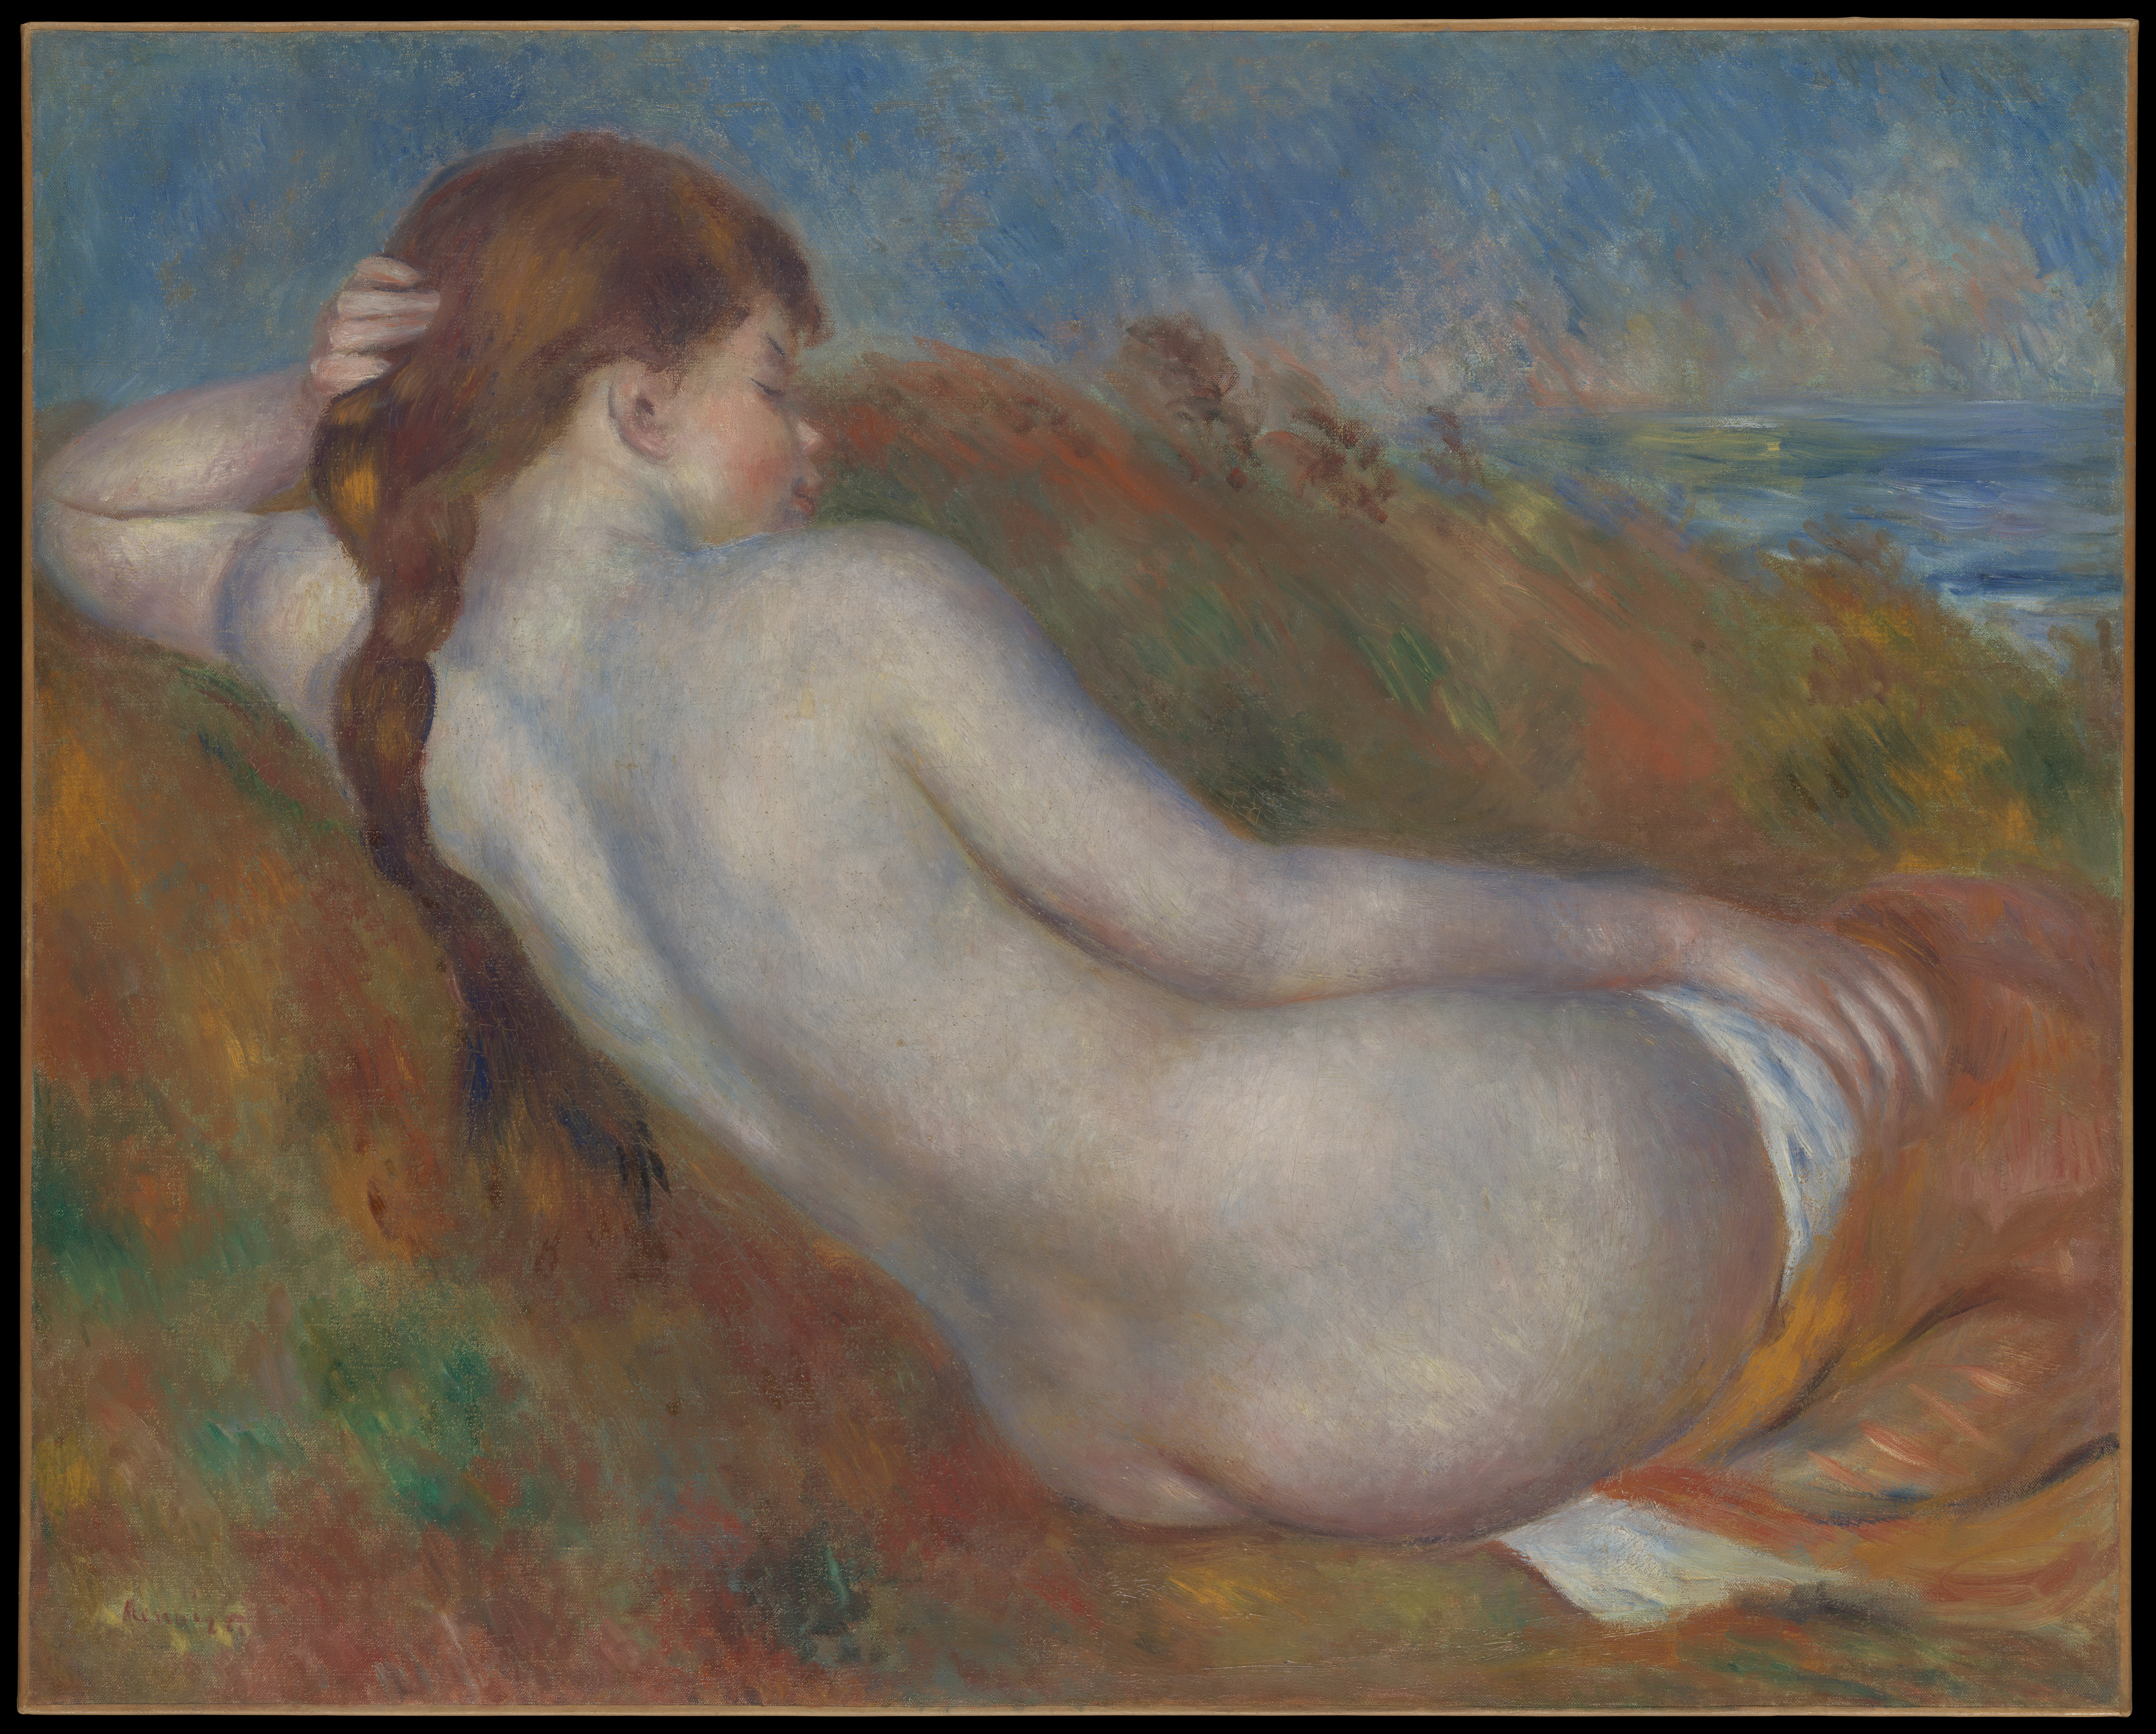 Reclining Nude by Pierre-Auguste Renoir - 1883 - 65.1 x 81.3 cm Metropolitan Museum of Art